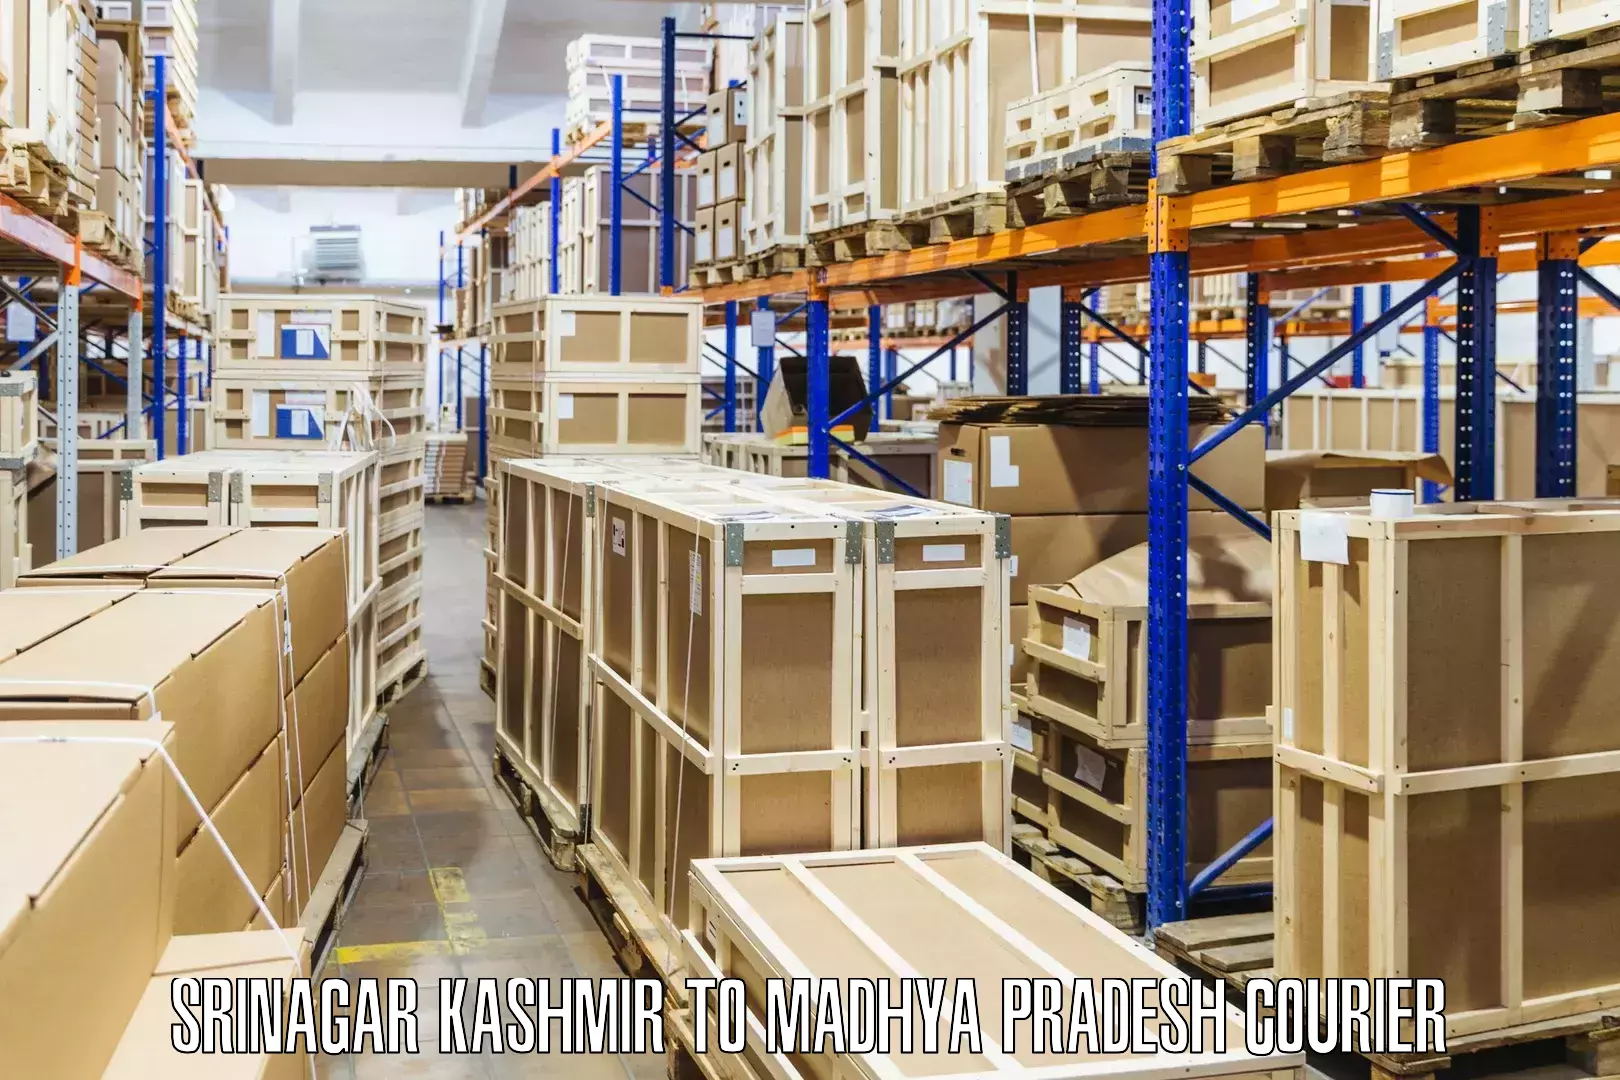 Shipping and handling Srinagar Kashmir to Jatara